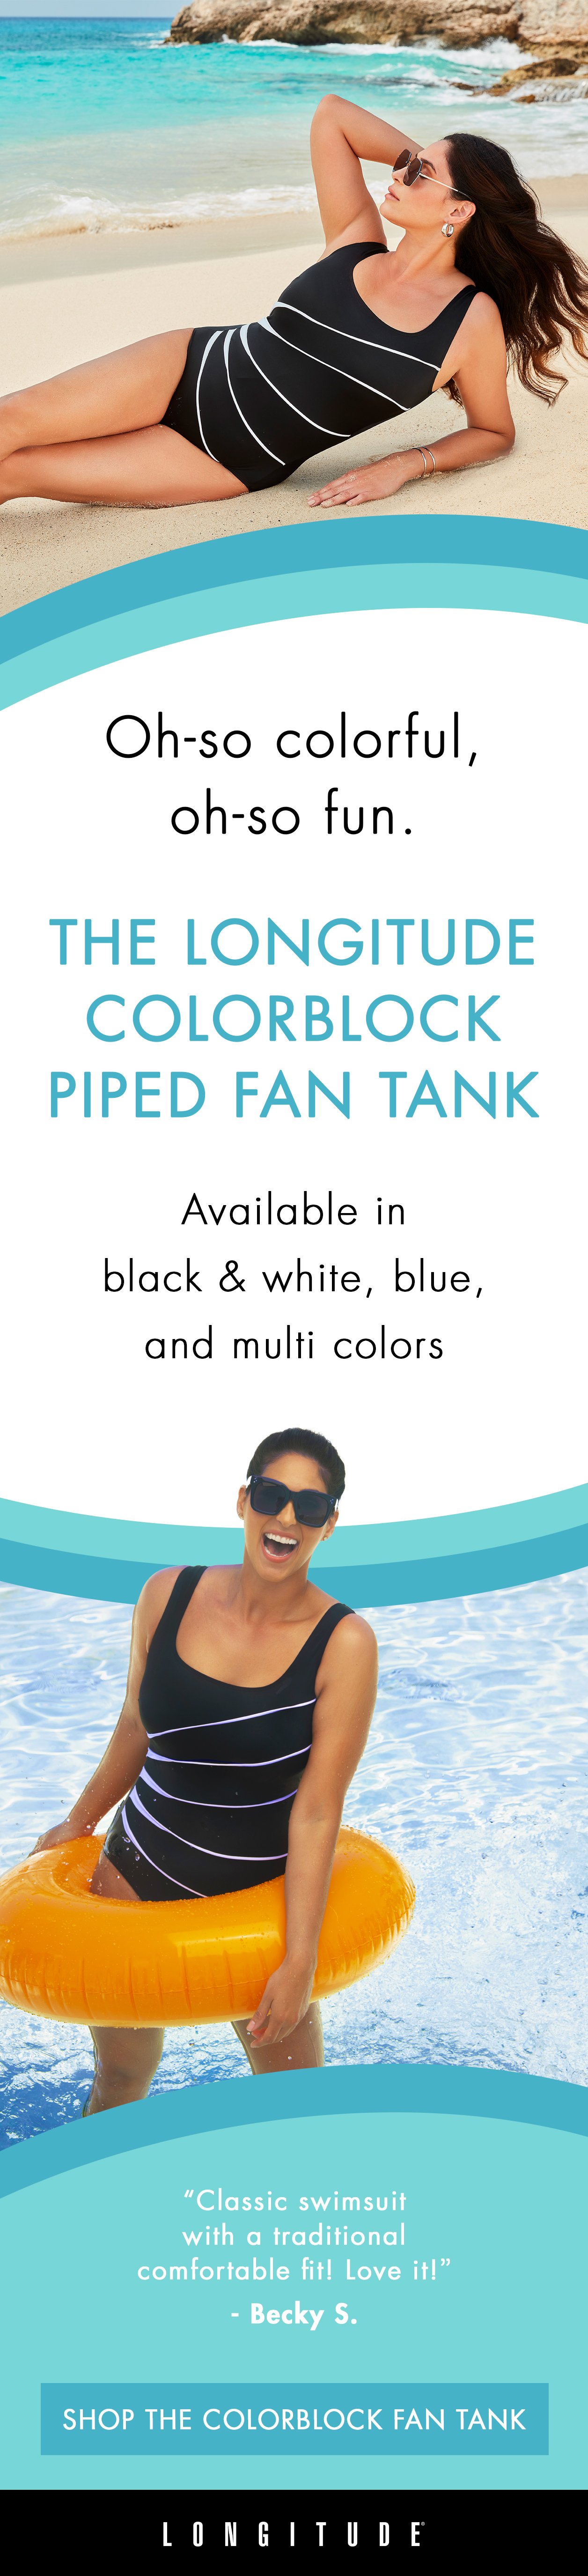 Shop the Colorblock Fan Tank